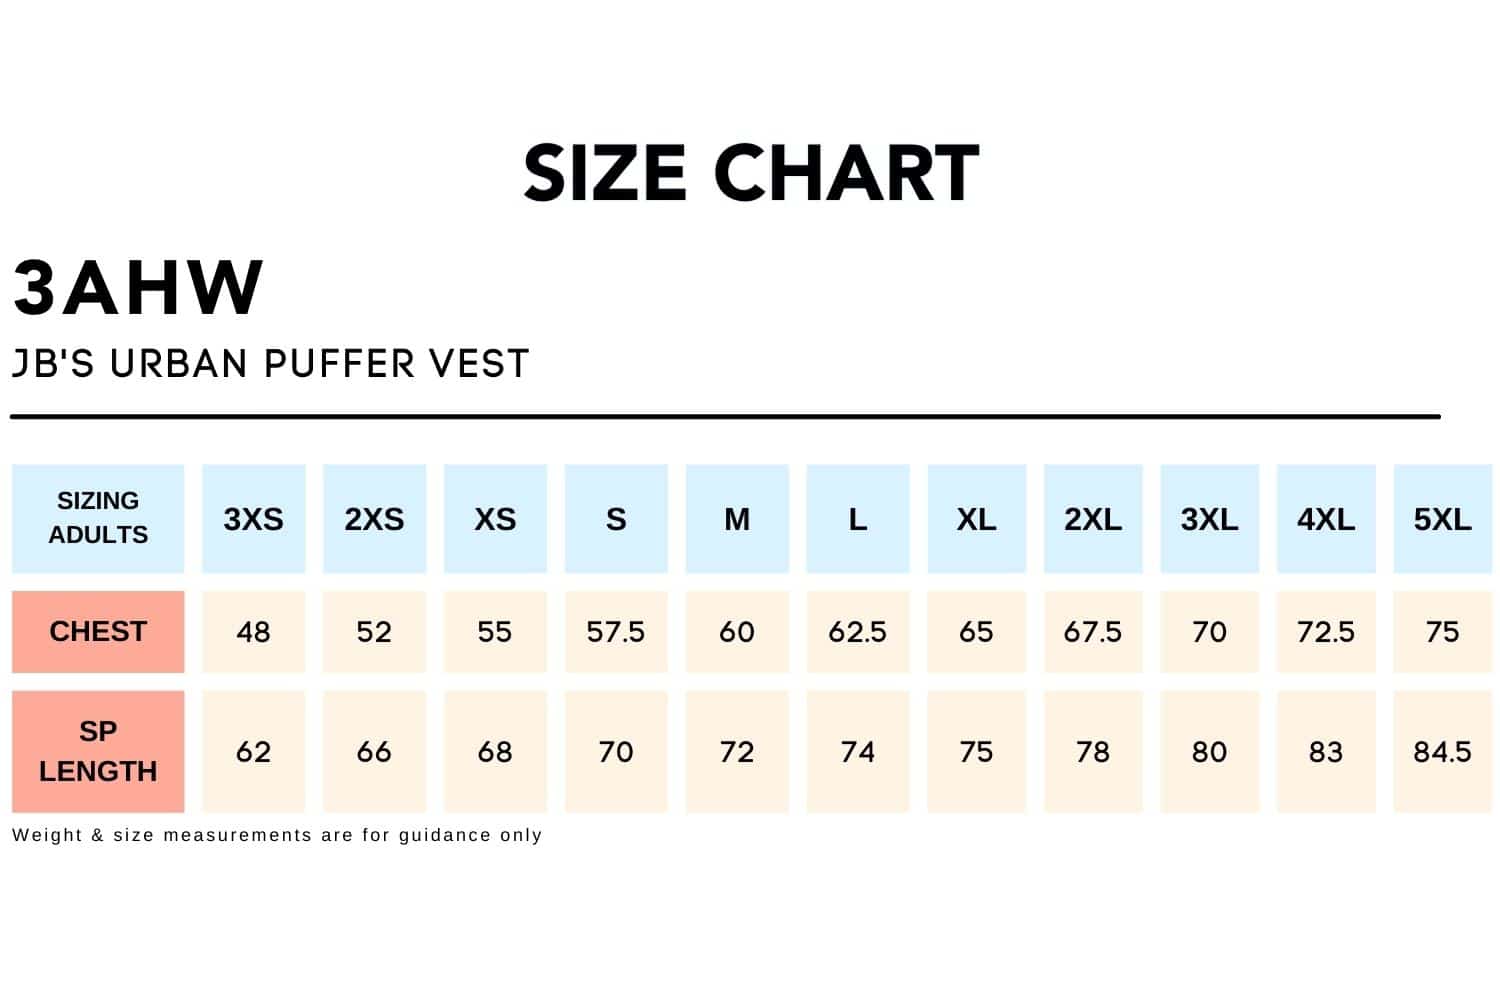 Size Chart_3AHW-JB'S URBAN PUFFER VEST